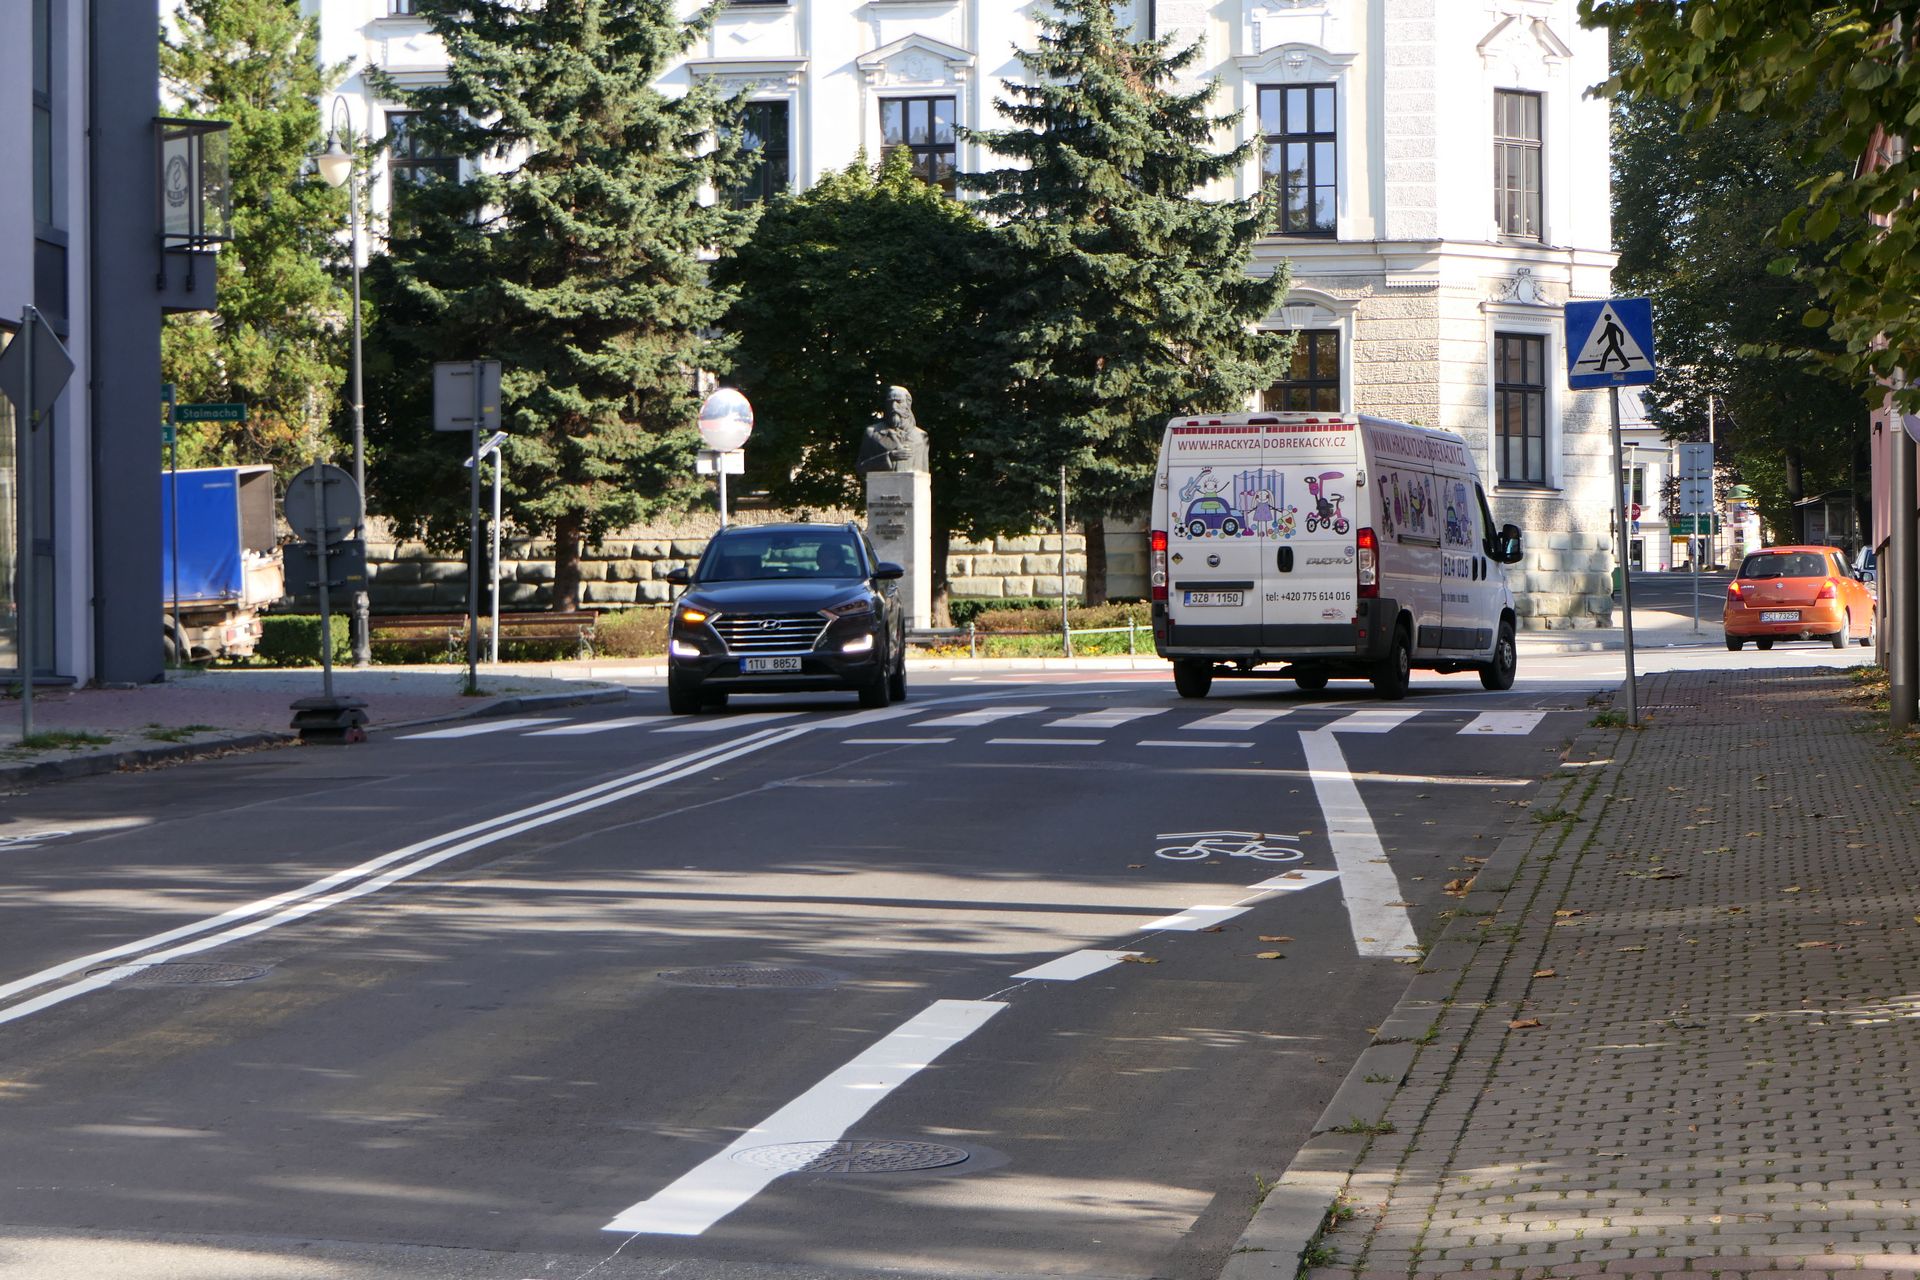 Zakończenie pasa ruchu dla rowerów przed rondem na Placu Wolności. Tu rowerzysta musi włączyć się do ruchu ogólnego ustępując pierwszeństwa samochodom poruszającym się po równoległym pasie.